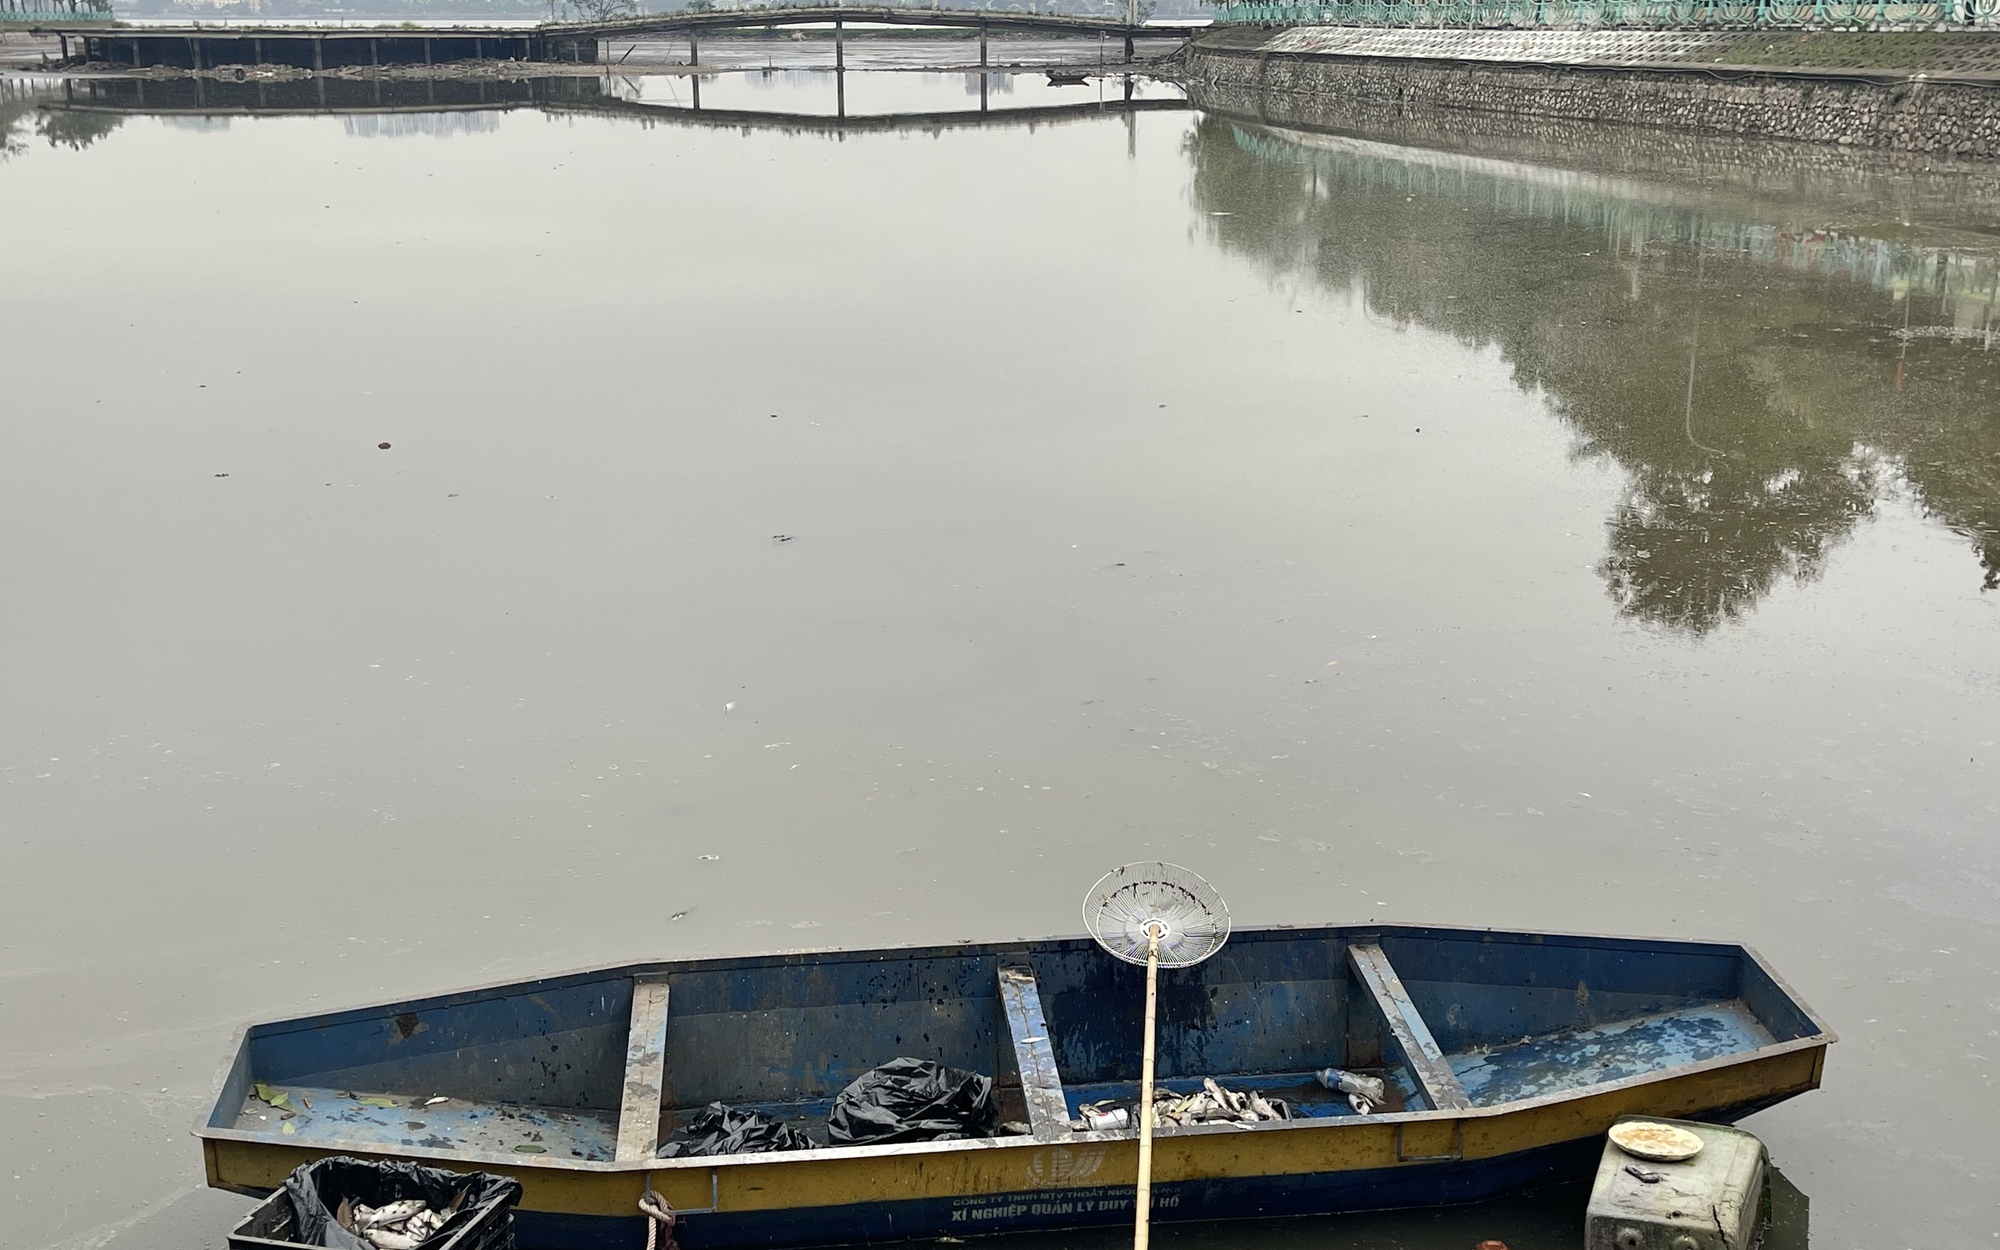 Cá chết ở hồ Thủy Sứ, Tây Hồ: Lãnh đạo phường nói gì?